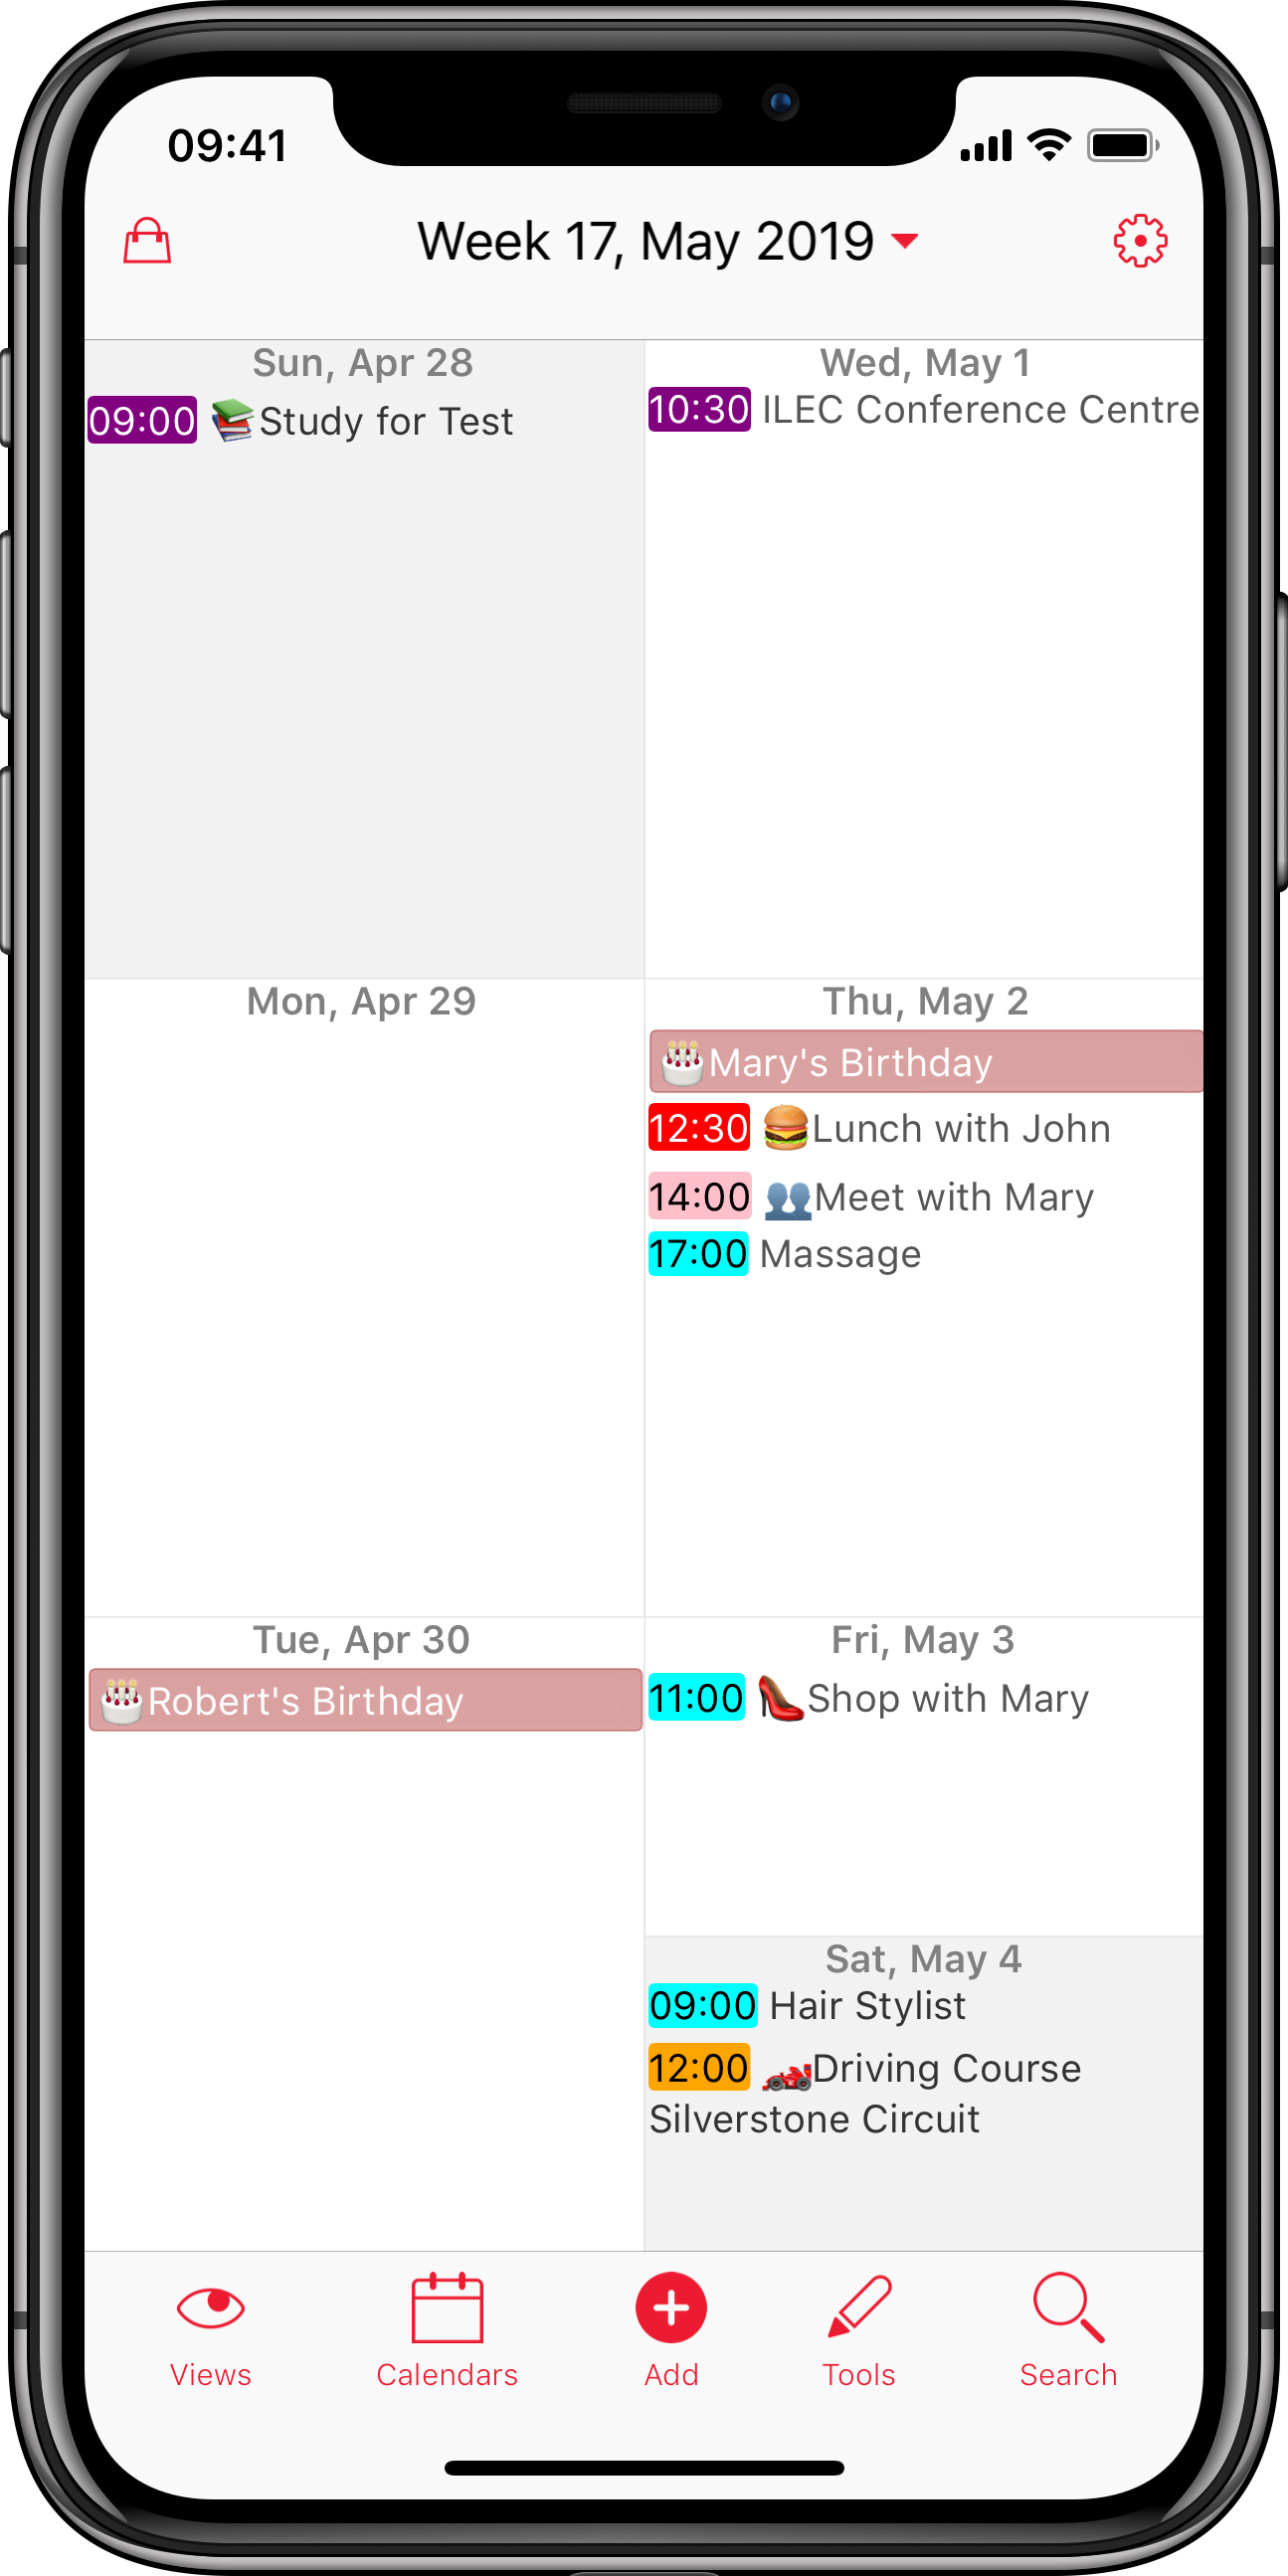 ipad calendar app multiple calendars